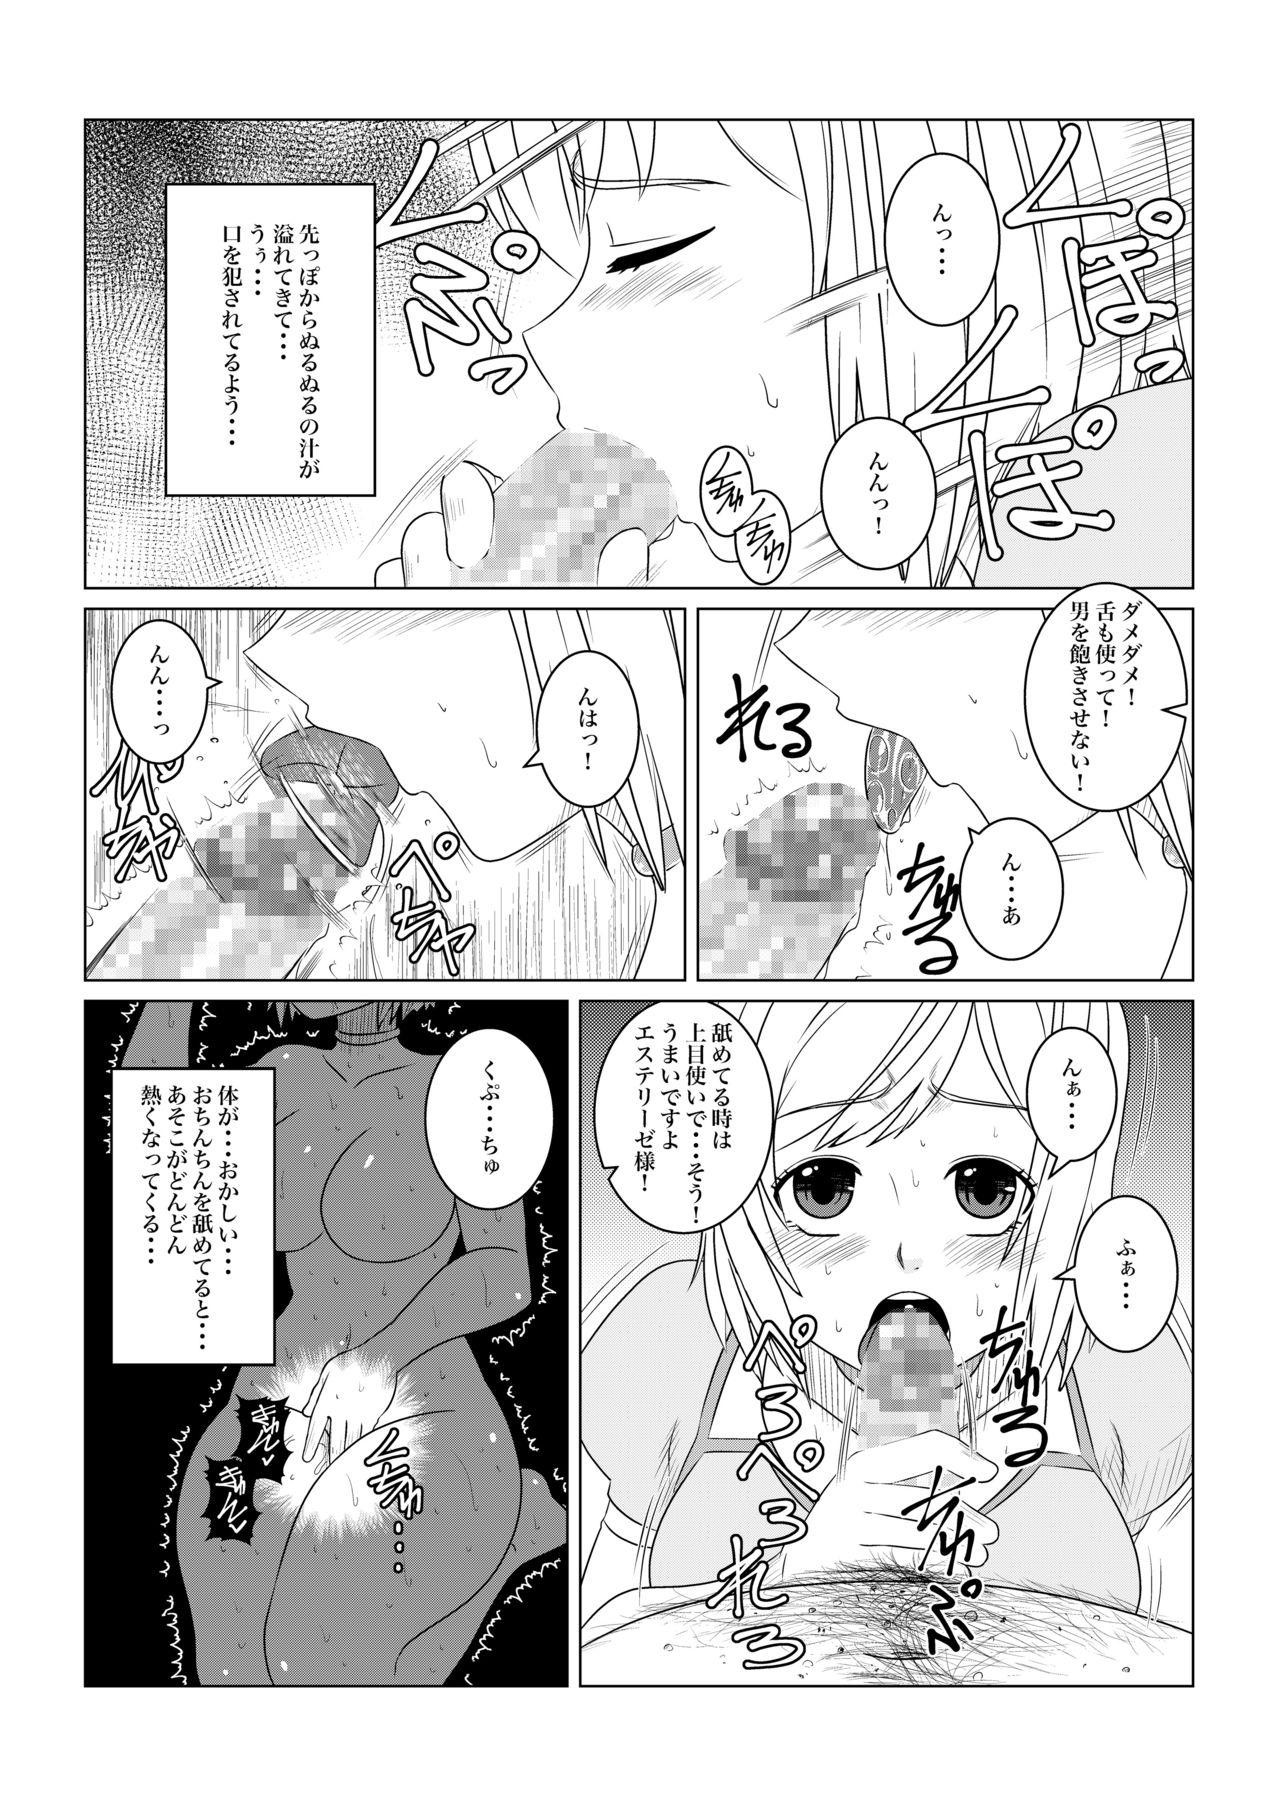 Futa Gekka Midarezaki - Tales of vesperia Moms - Page 11